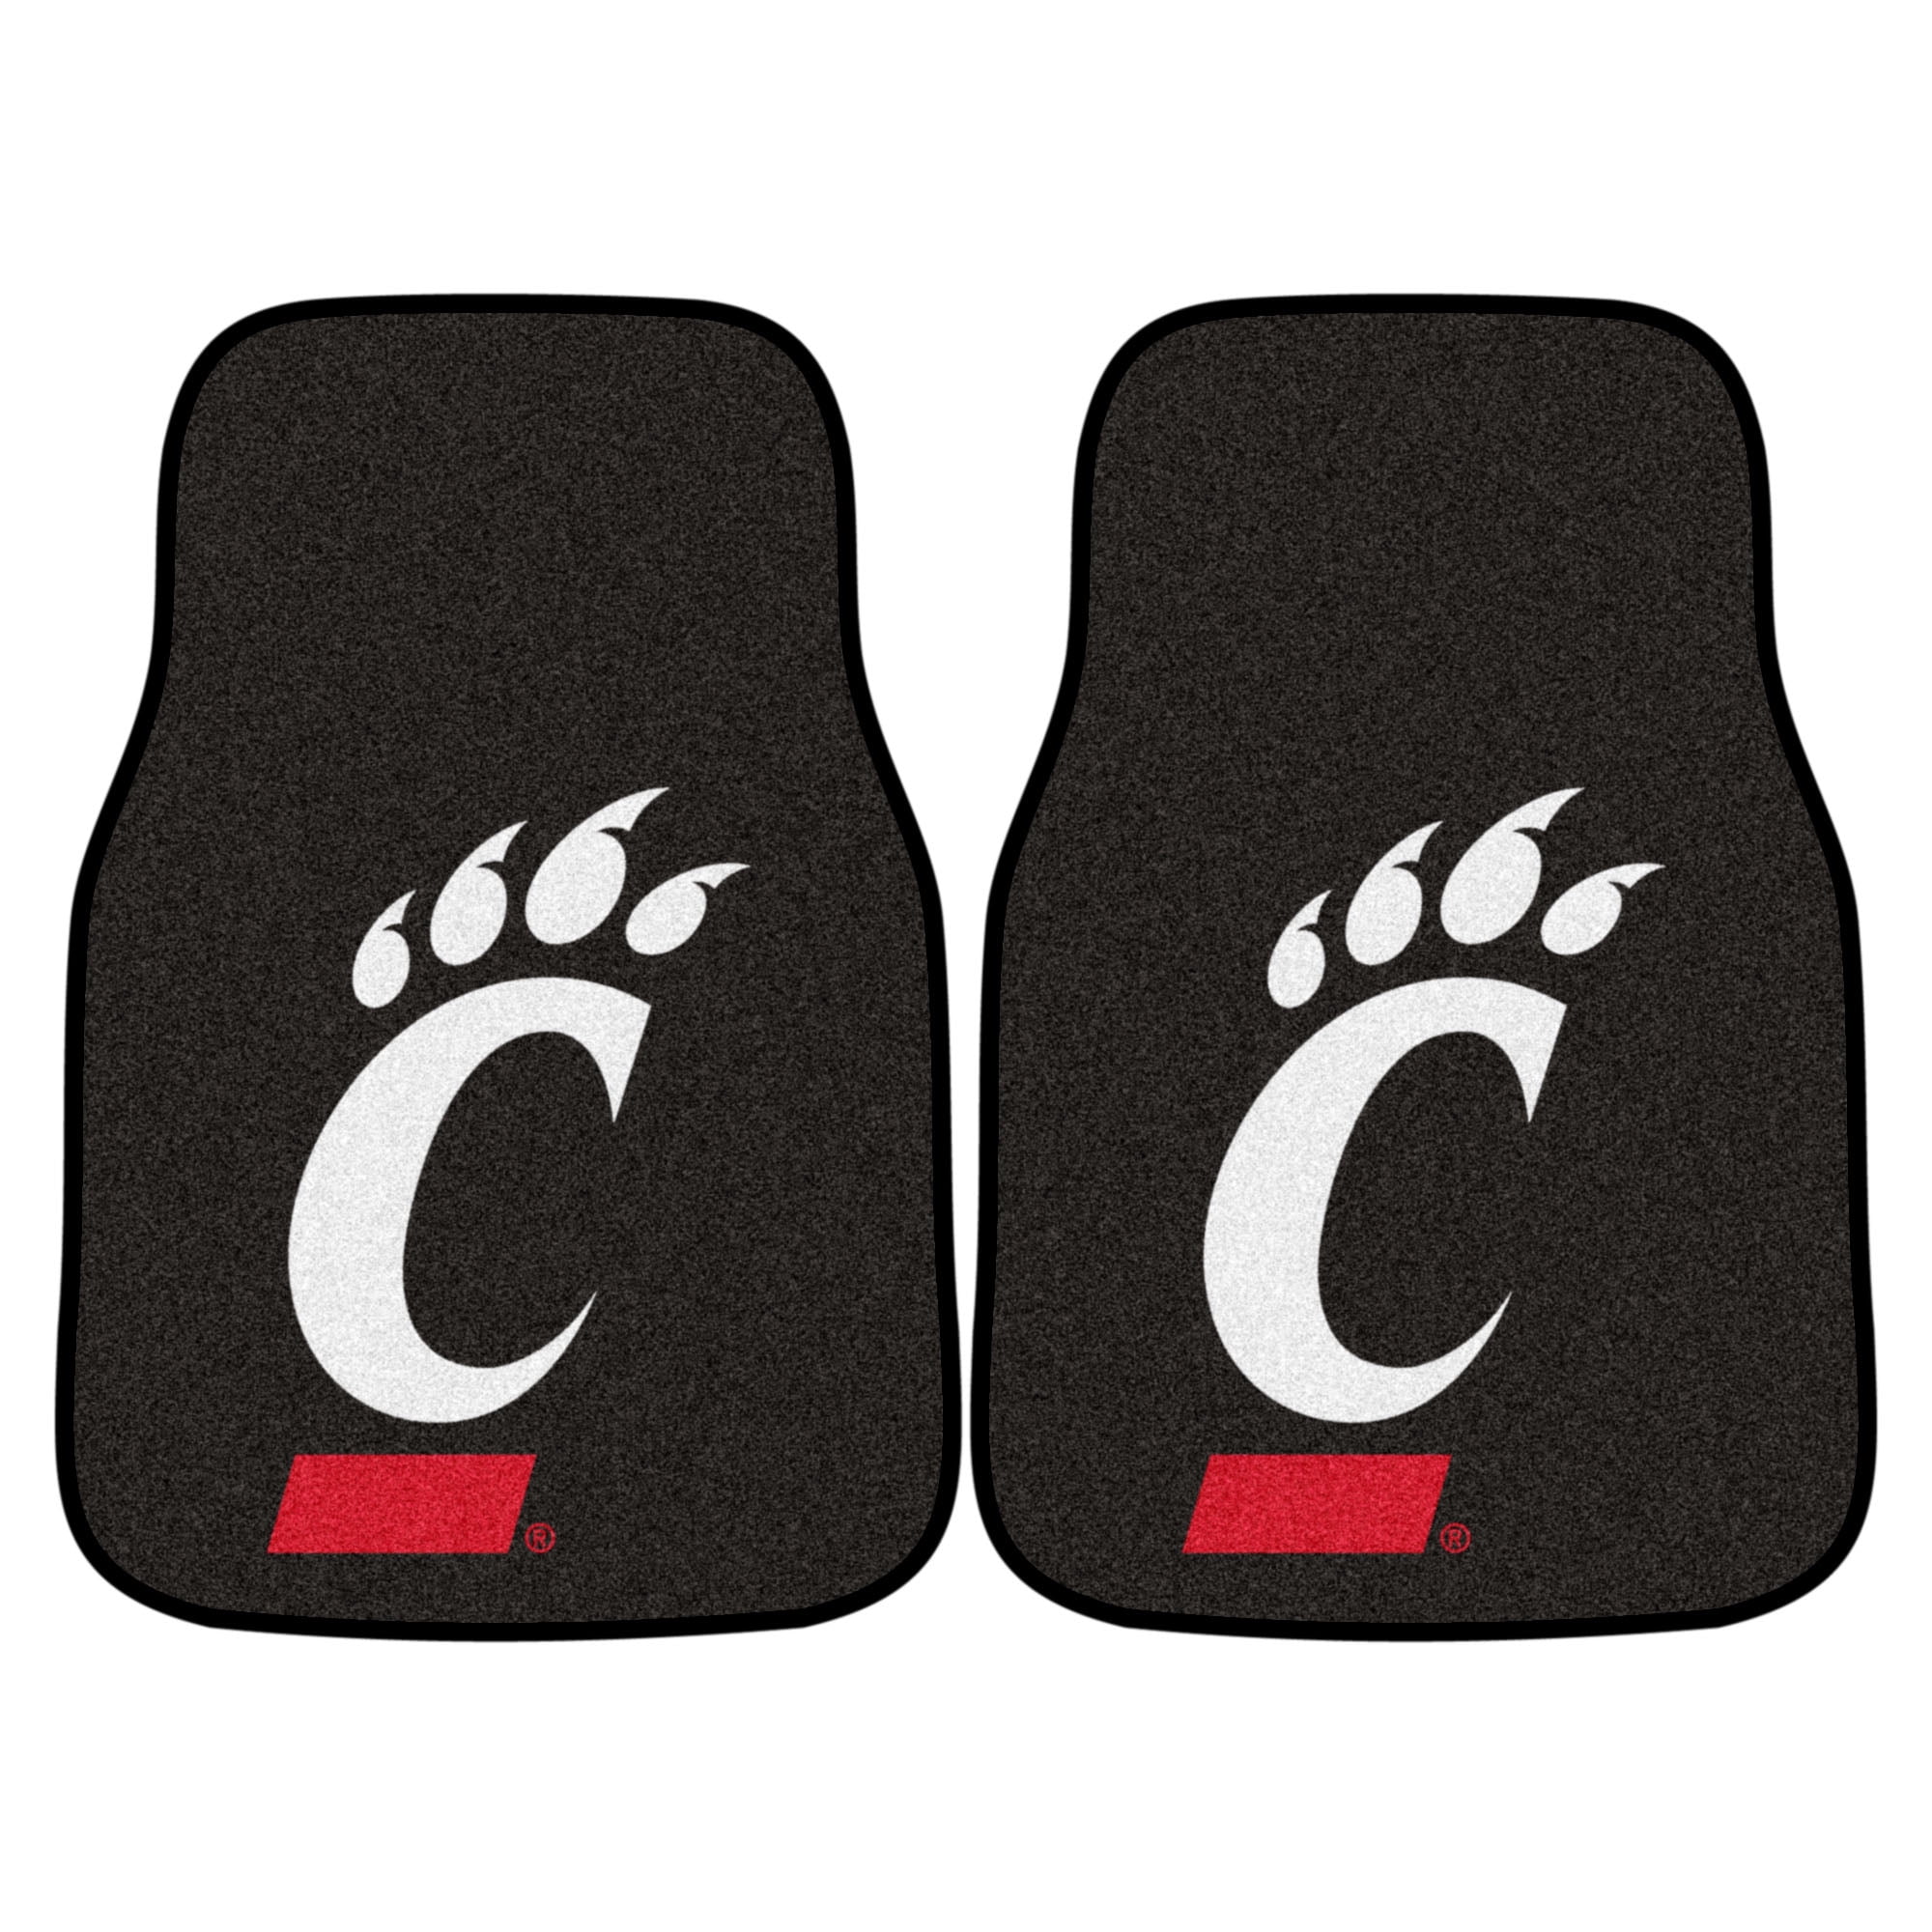 FANMATS NCAA University of Cincinnati Bearcats Nylon Face Carpet Car Mat 